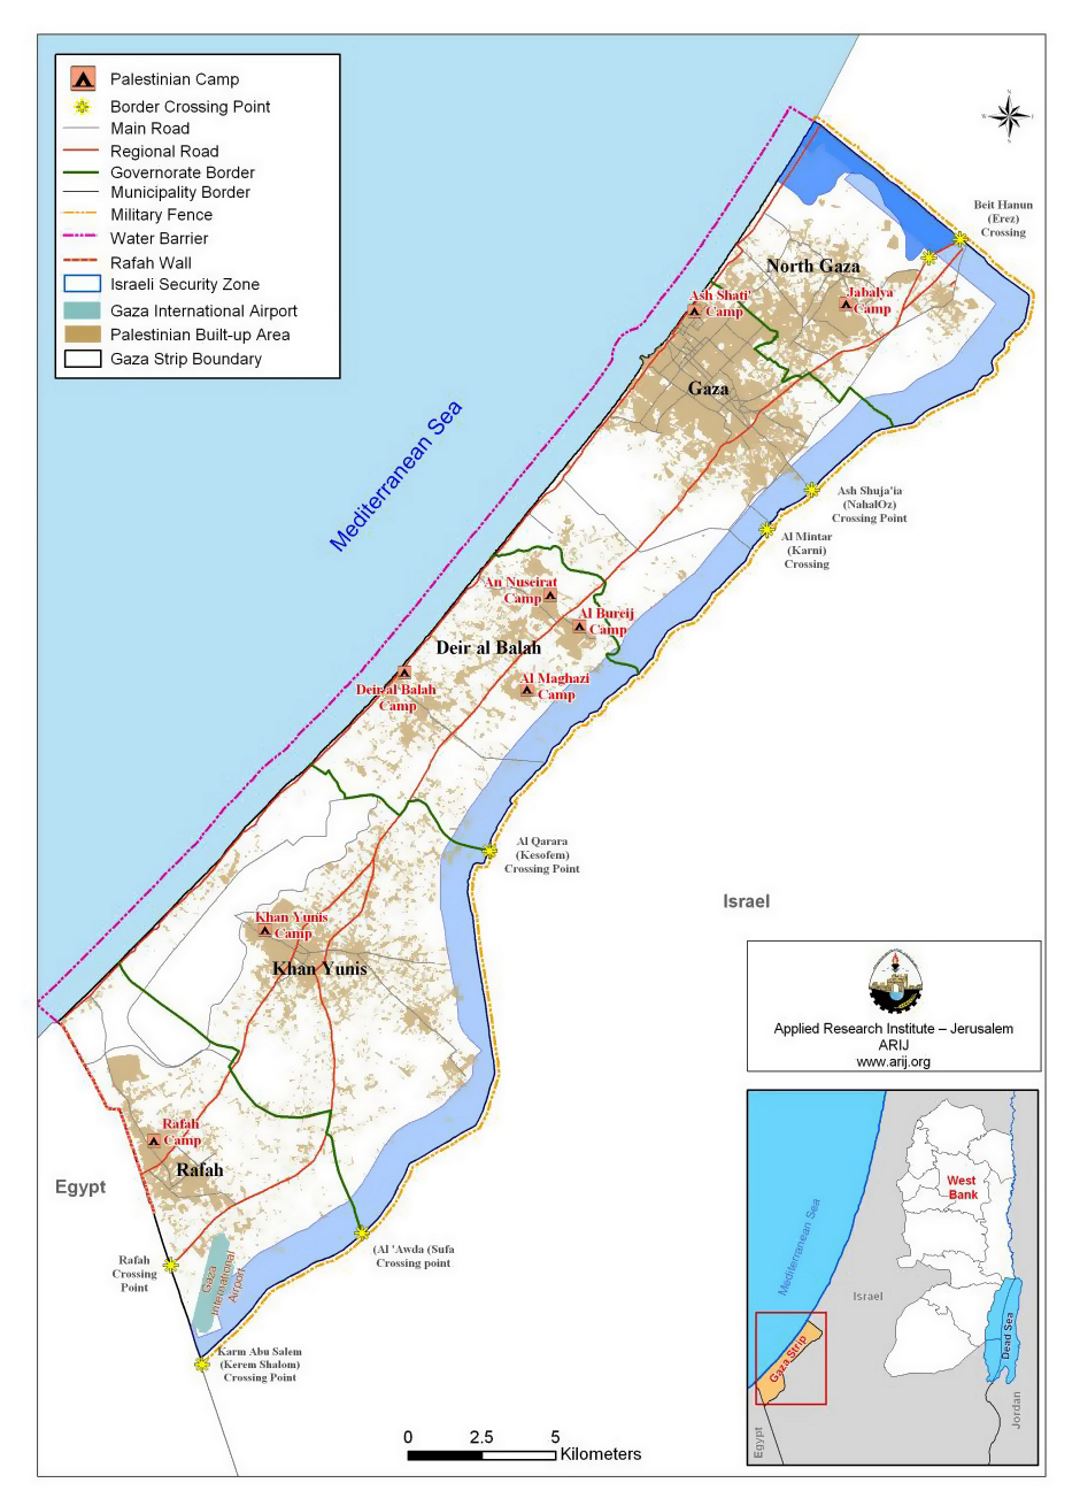 Mapa de la Franja de Gaza con otras marcas